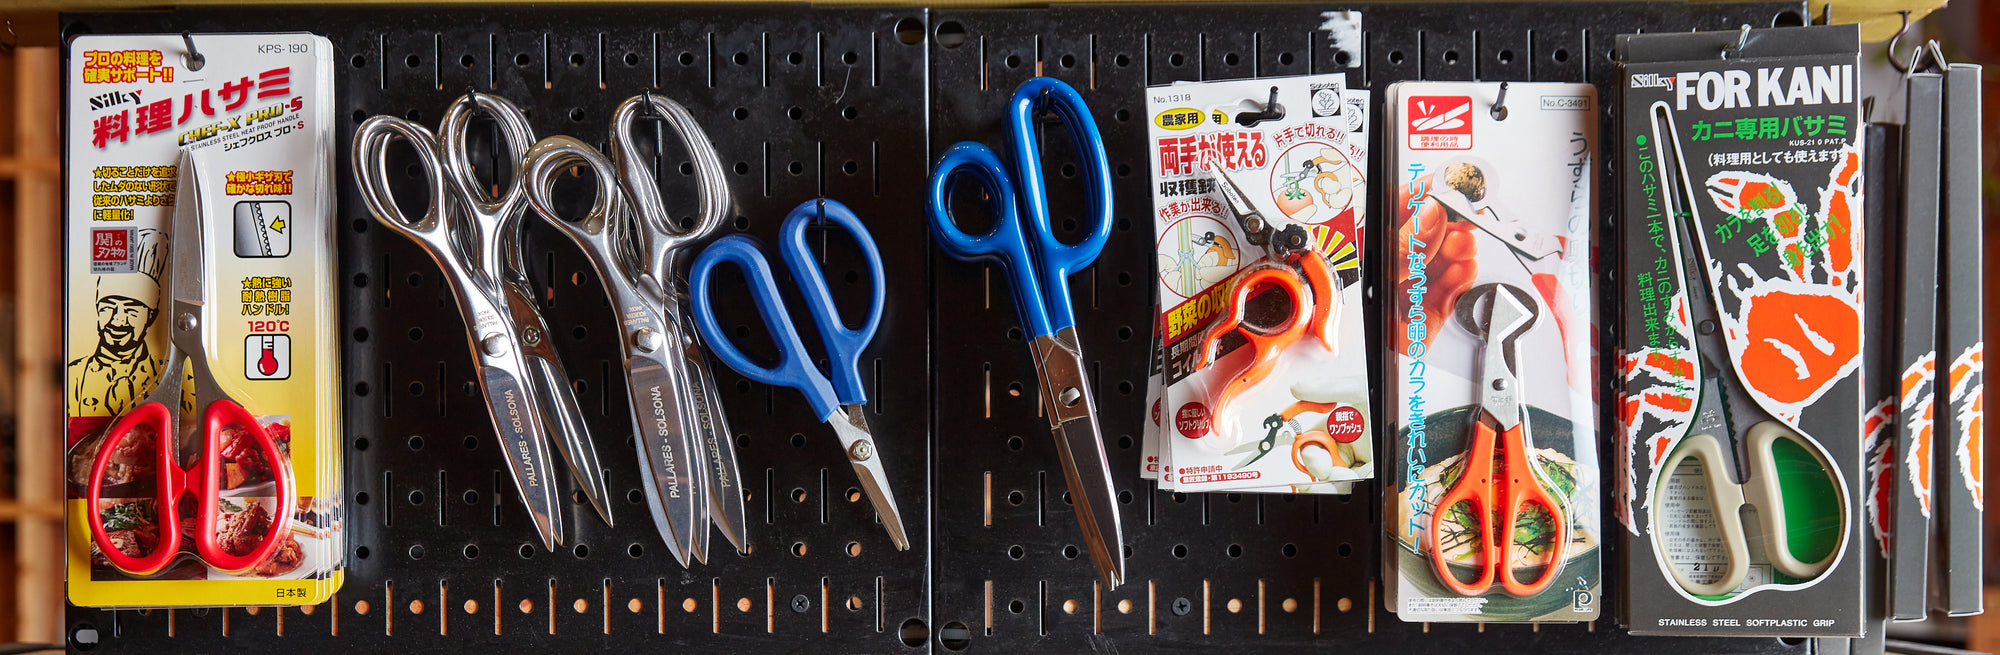 Chef Craft 8 Kitchen/Utility Scissors